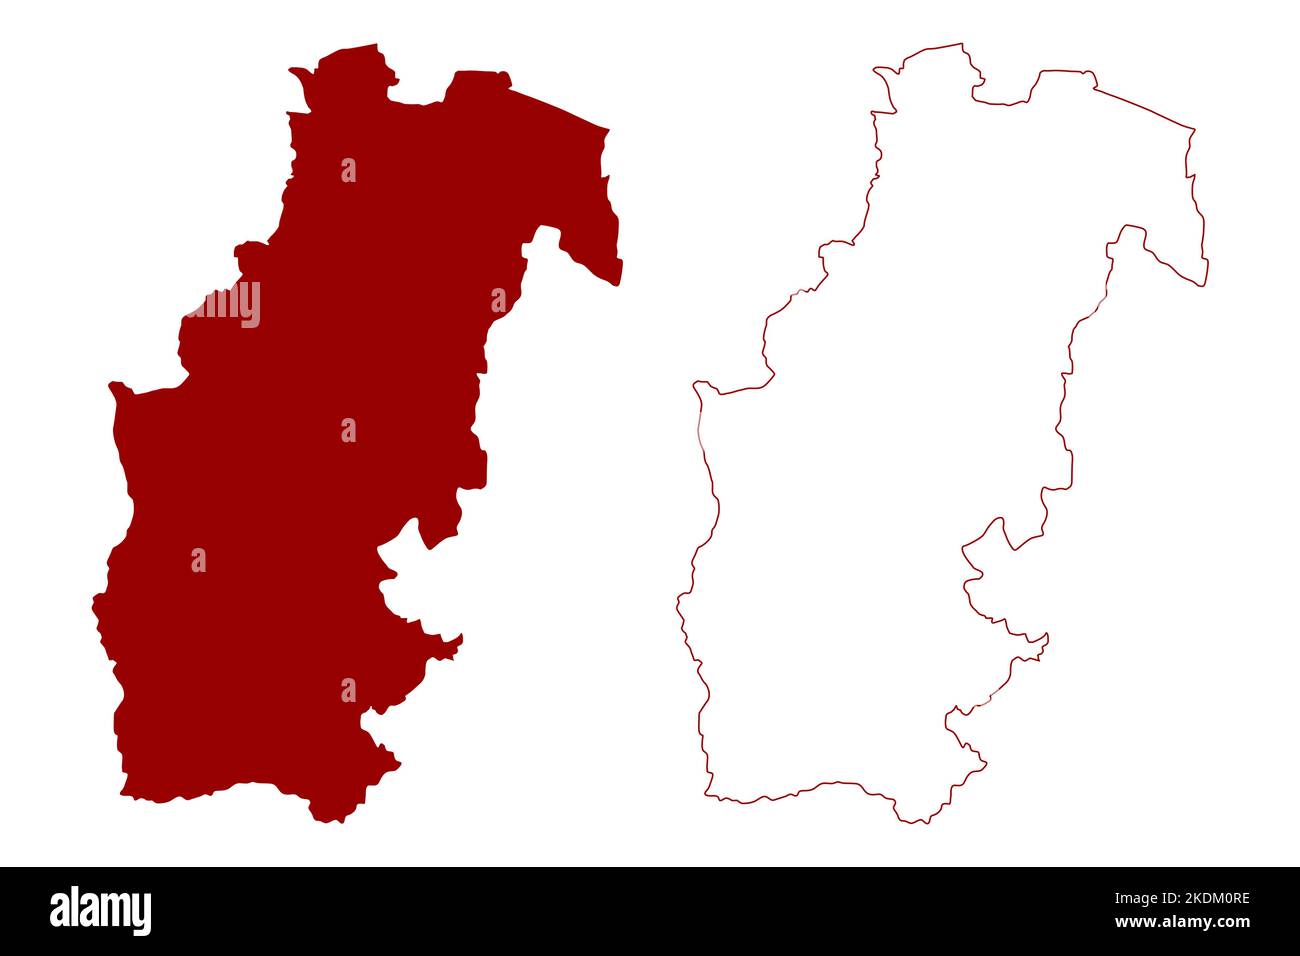 Sevenoaks zone non métropolitaine (Royaume-Uni de Grande-Bretagne et d'Irlande du Nord, comté cérémonial de Kent, Angleterre) illustration vectorielle, s Illustration de Vecteur